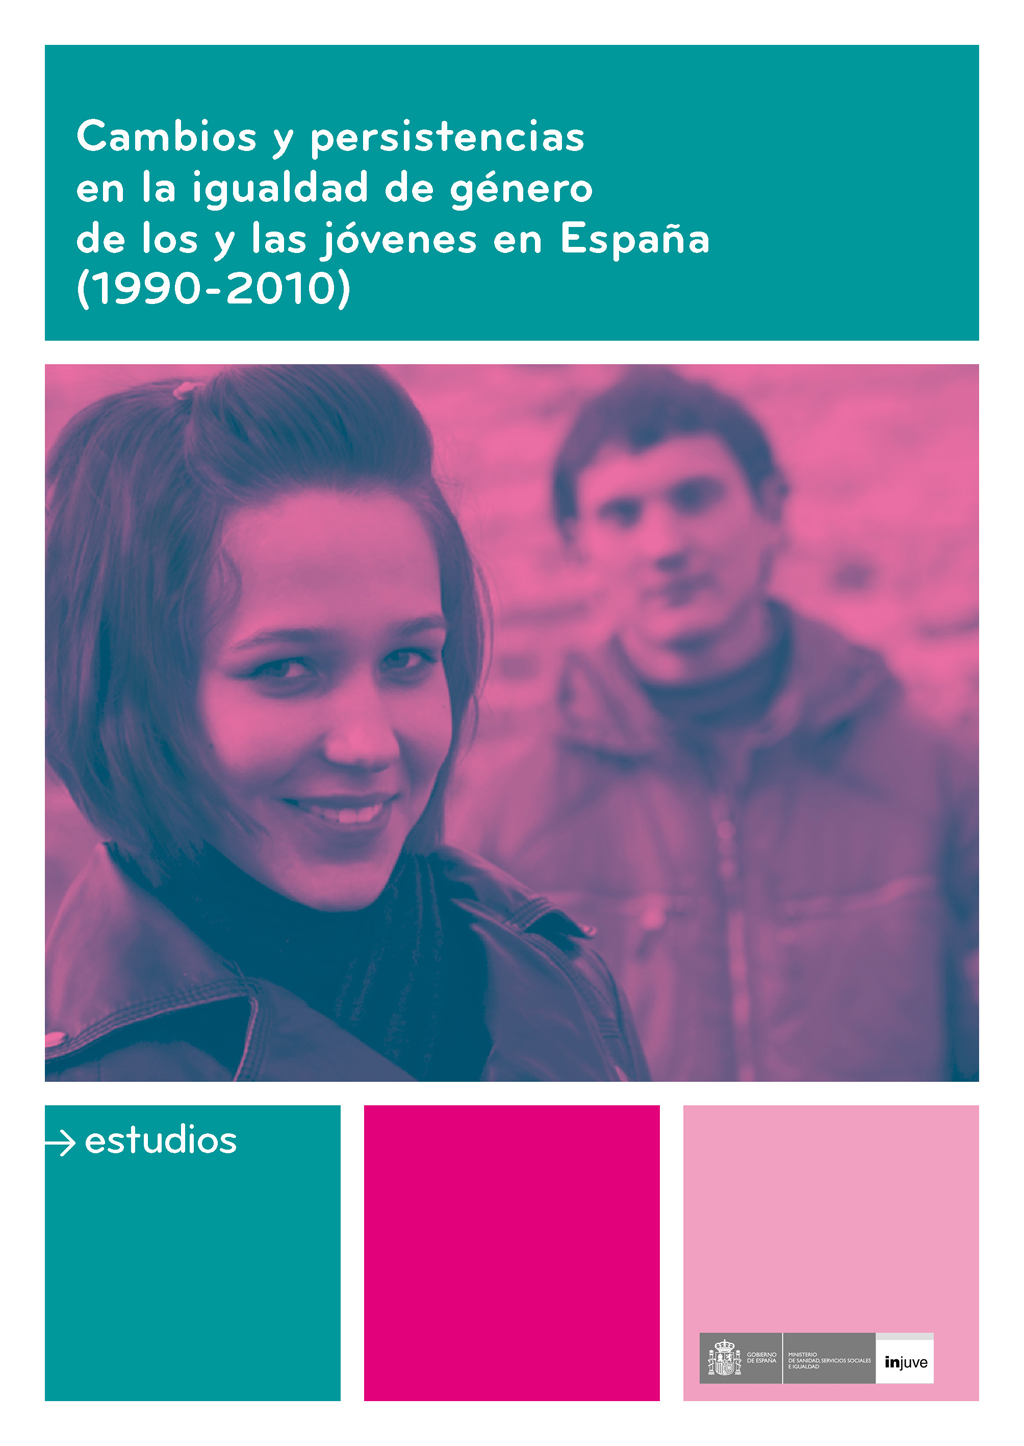 Cambios y persistencias en la igualdad de género de los y las jóvenes en  España (1990-2010) | Injuve, Instituto de la Juventud.